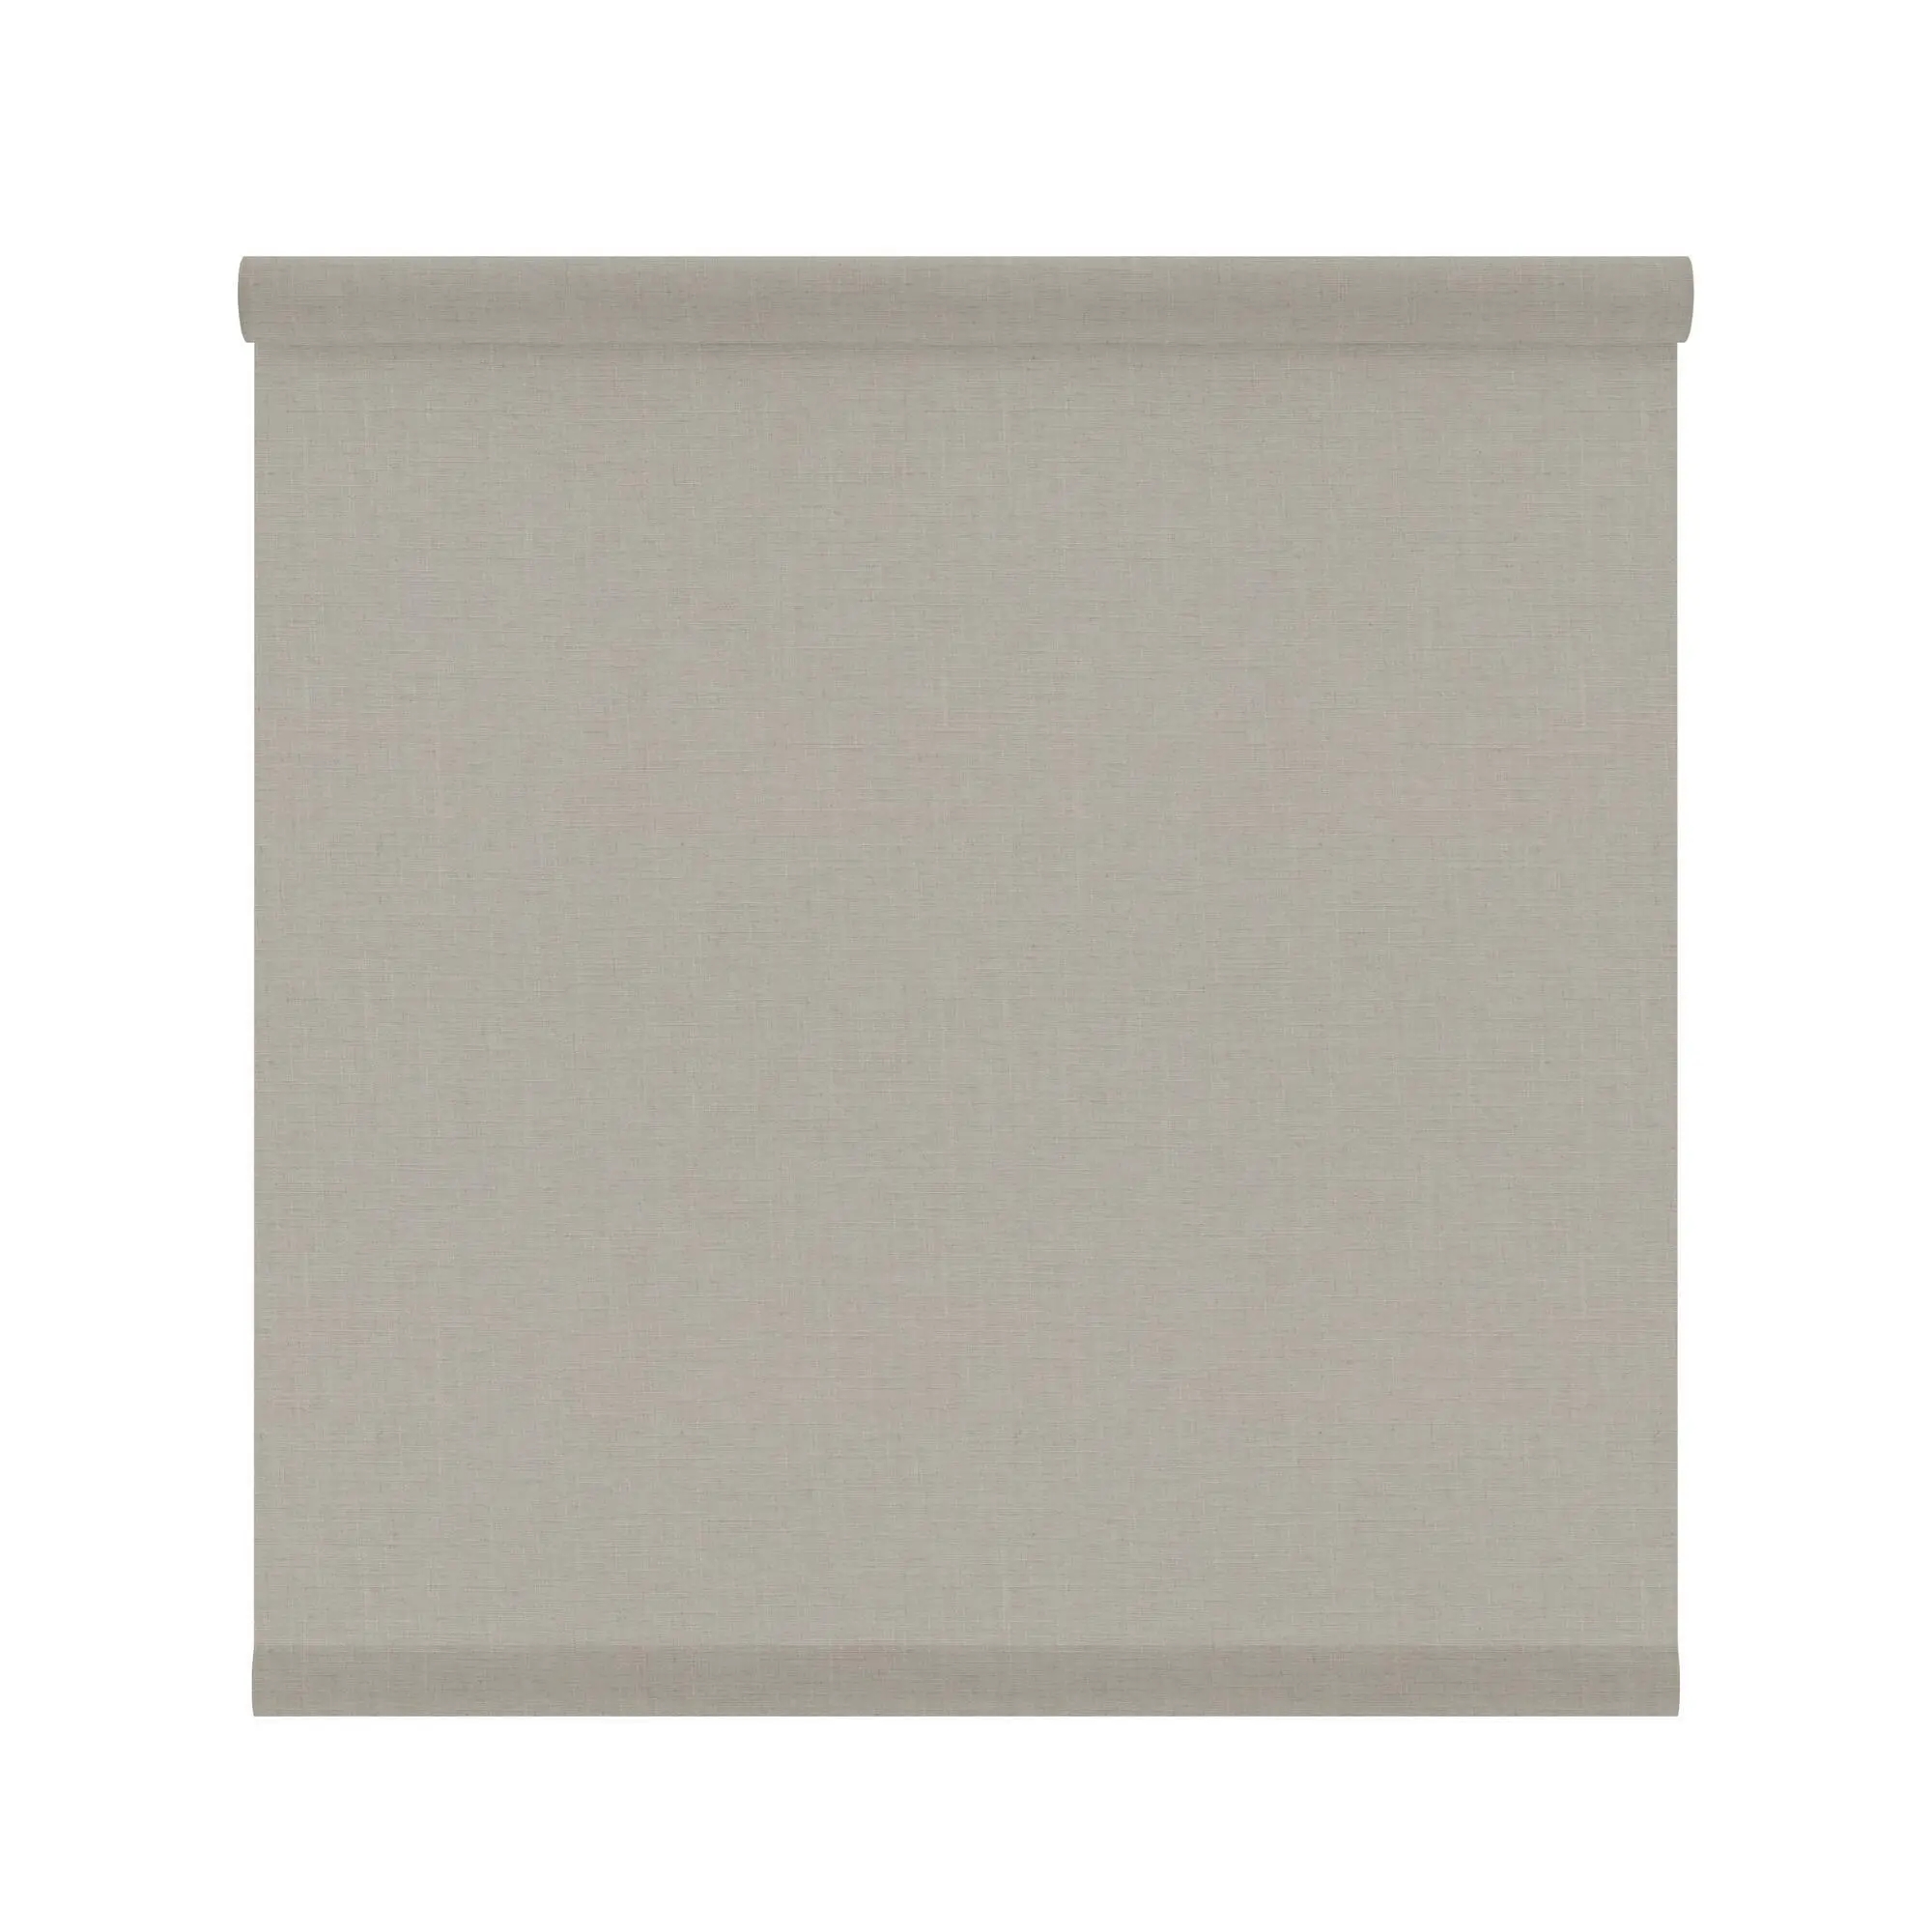 Tessuto per tende a rullo filtrante INSPIRE Brisbane beige 197 x 250 cm - 6